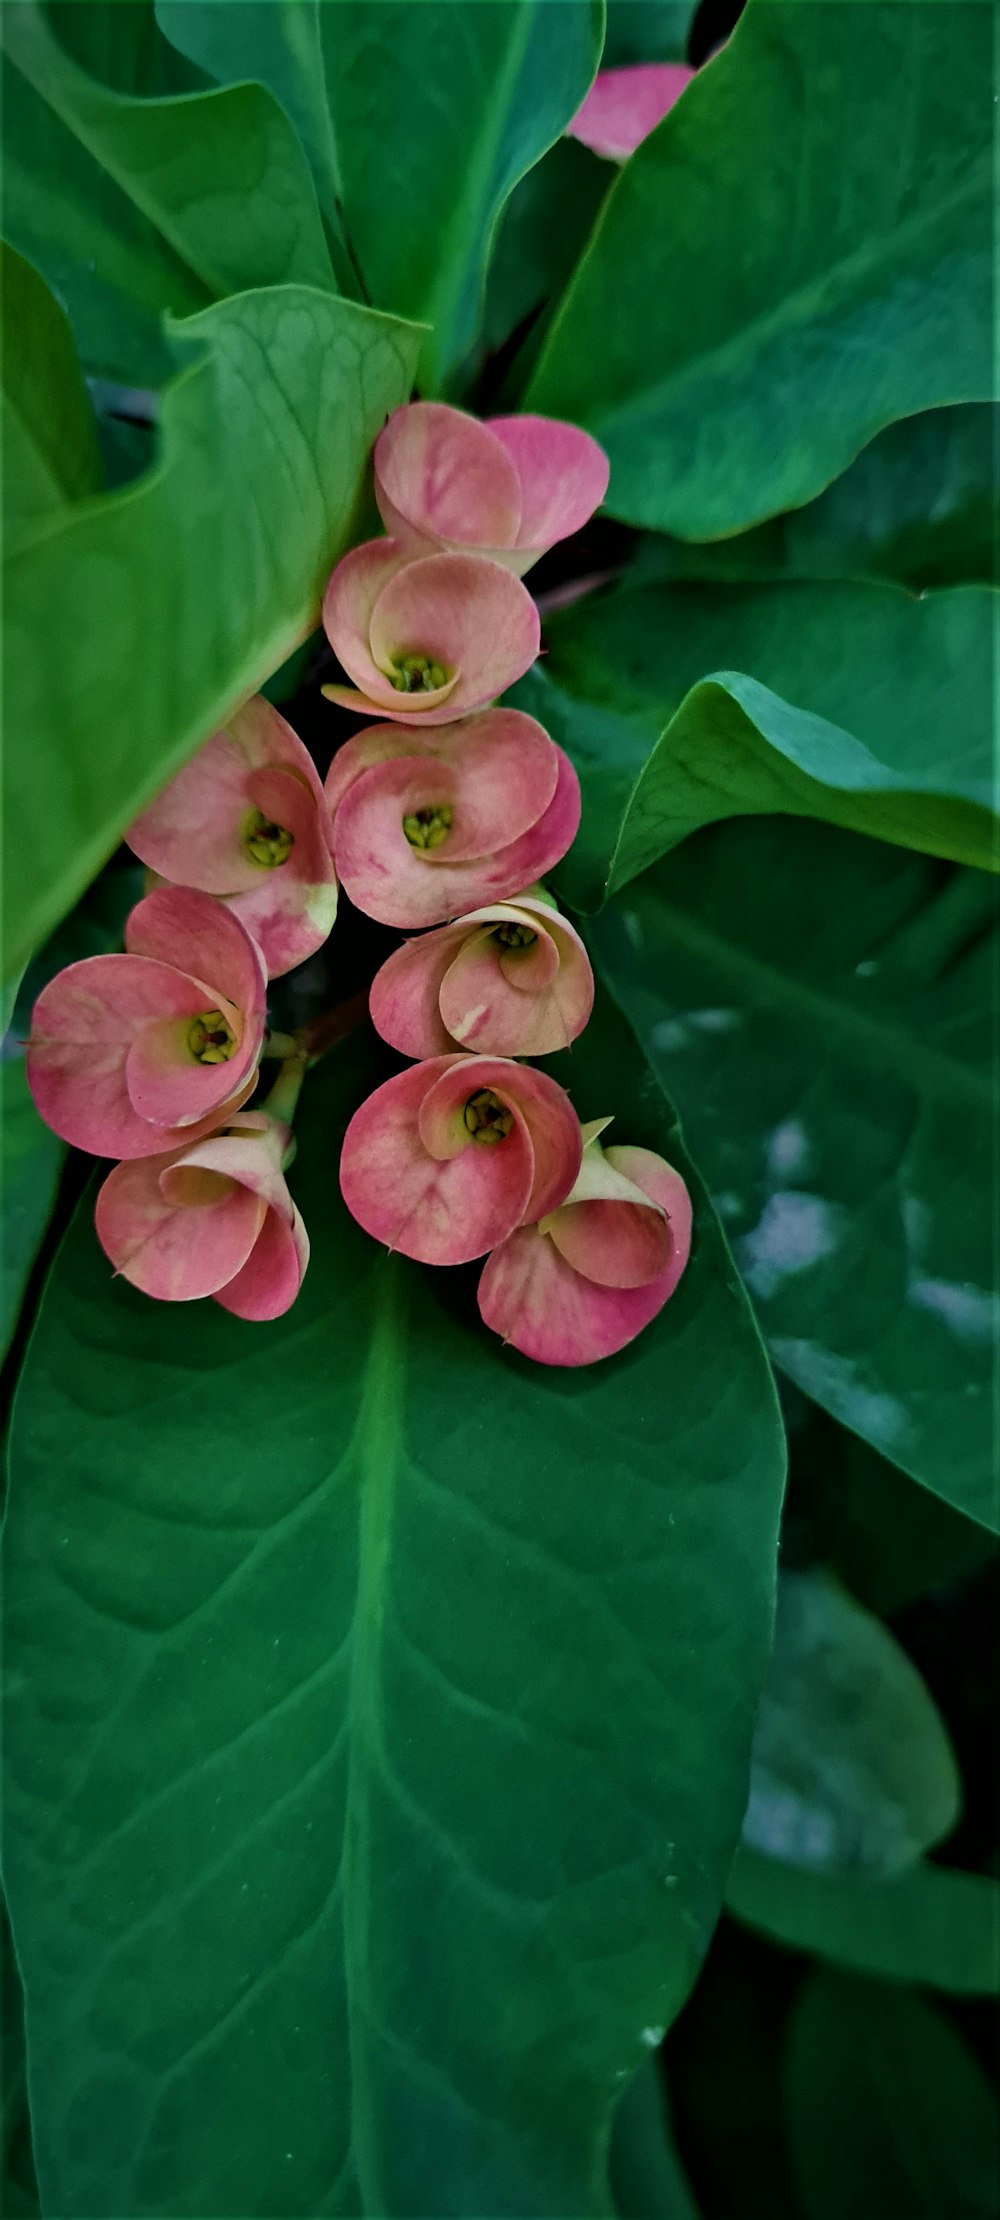 녹색 잎 위에 앉아 있는 분홍색 꽃 그룹